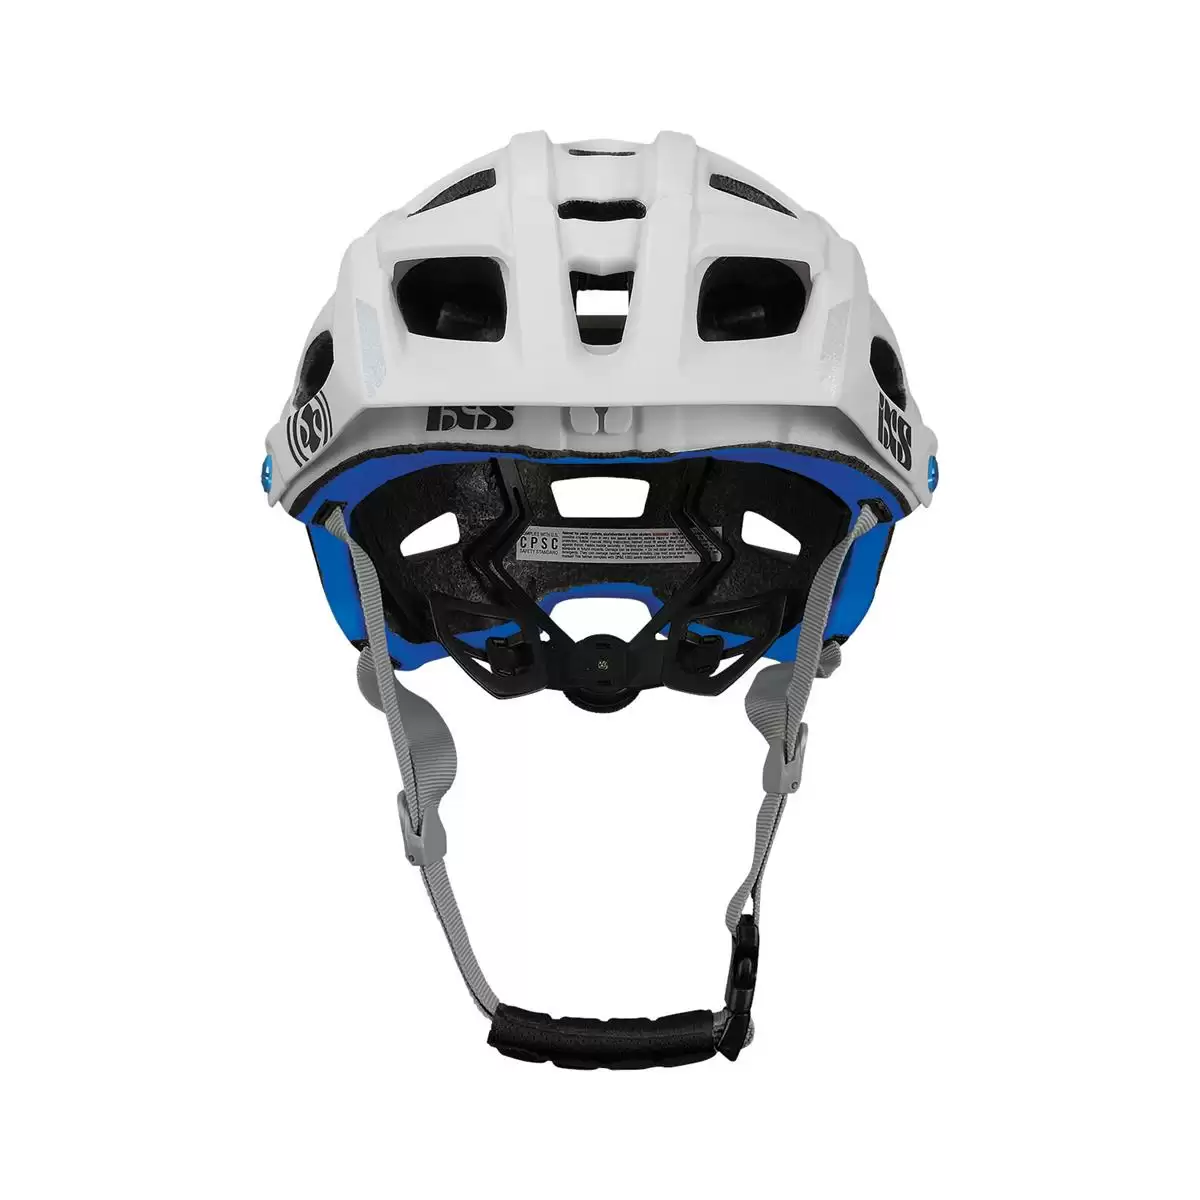 Henduro Helmet Trail Evo E-Bike Edition White Size M/L (58-62cm) #1